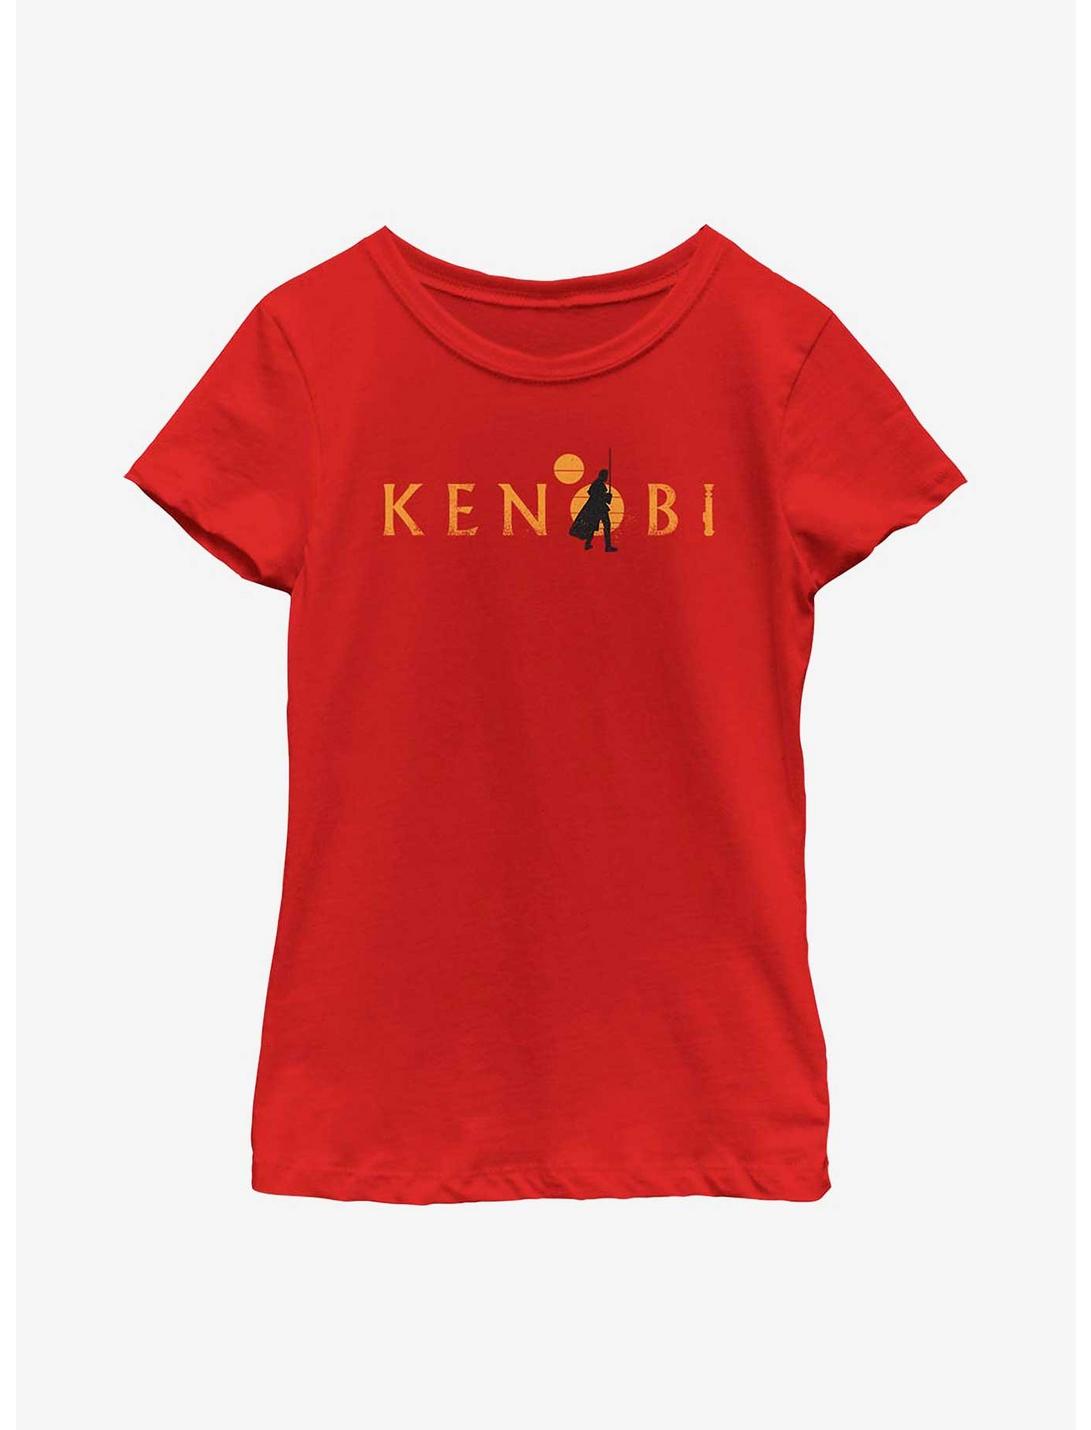 Star Wars Obi-Wan Kenobi Two Suns Logo Youth Girls T-Shirt, RED, hi-res